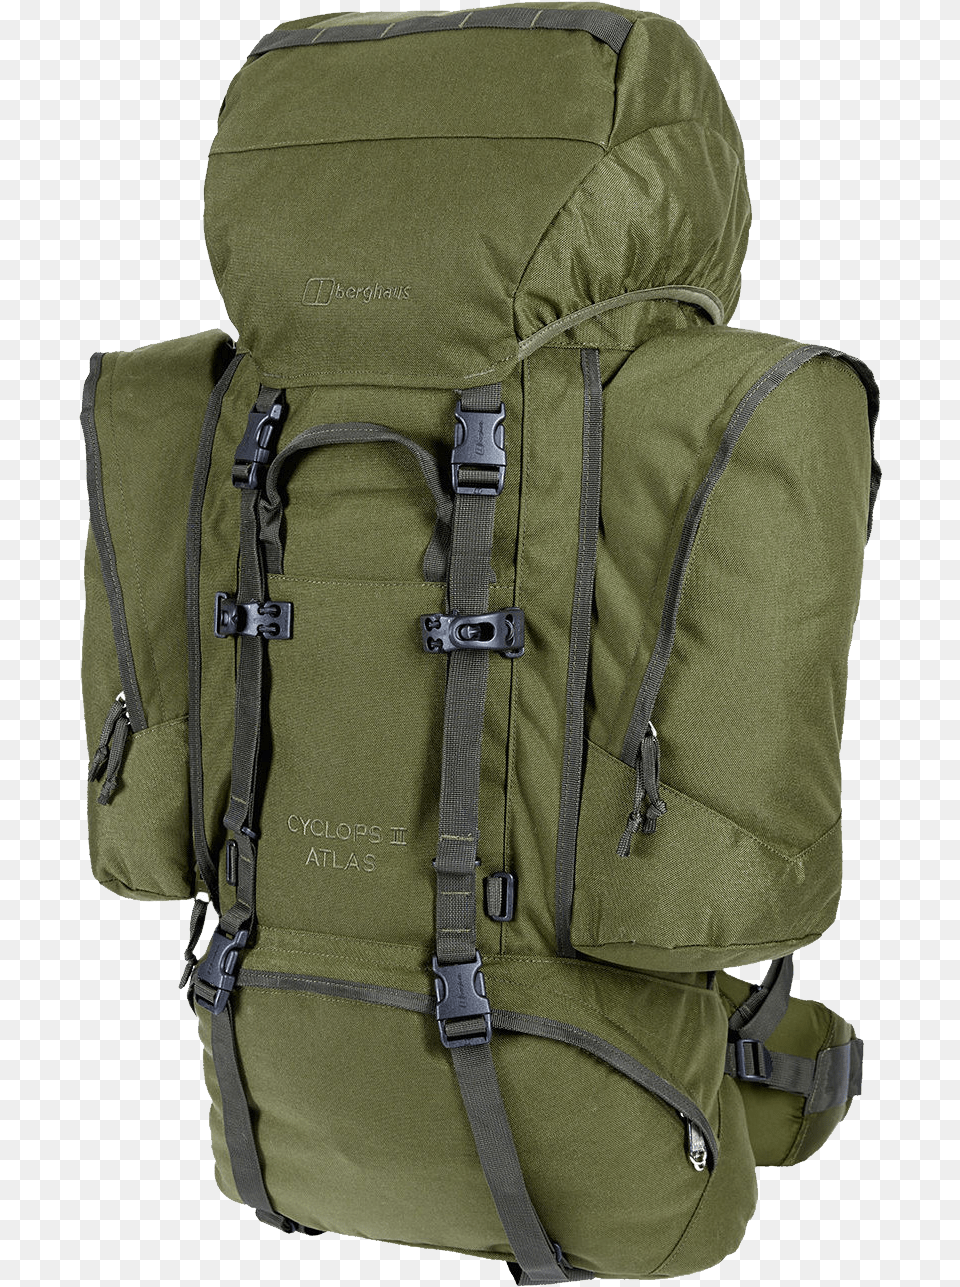 Transparent Backpack Hiking Backpack, Bag Png Image